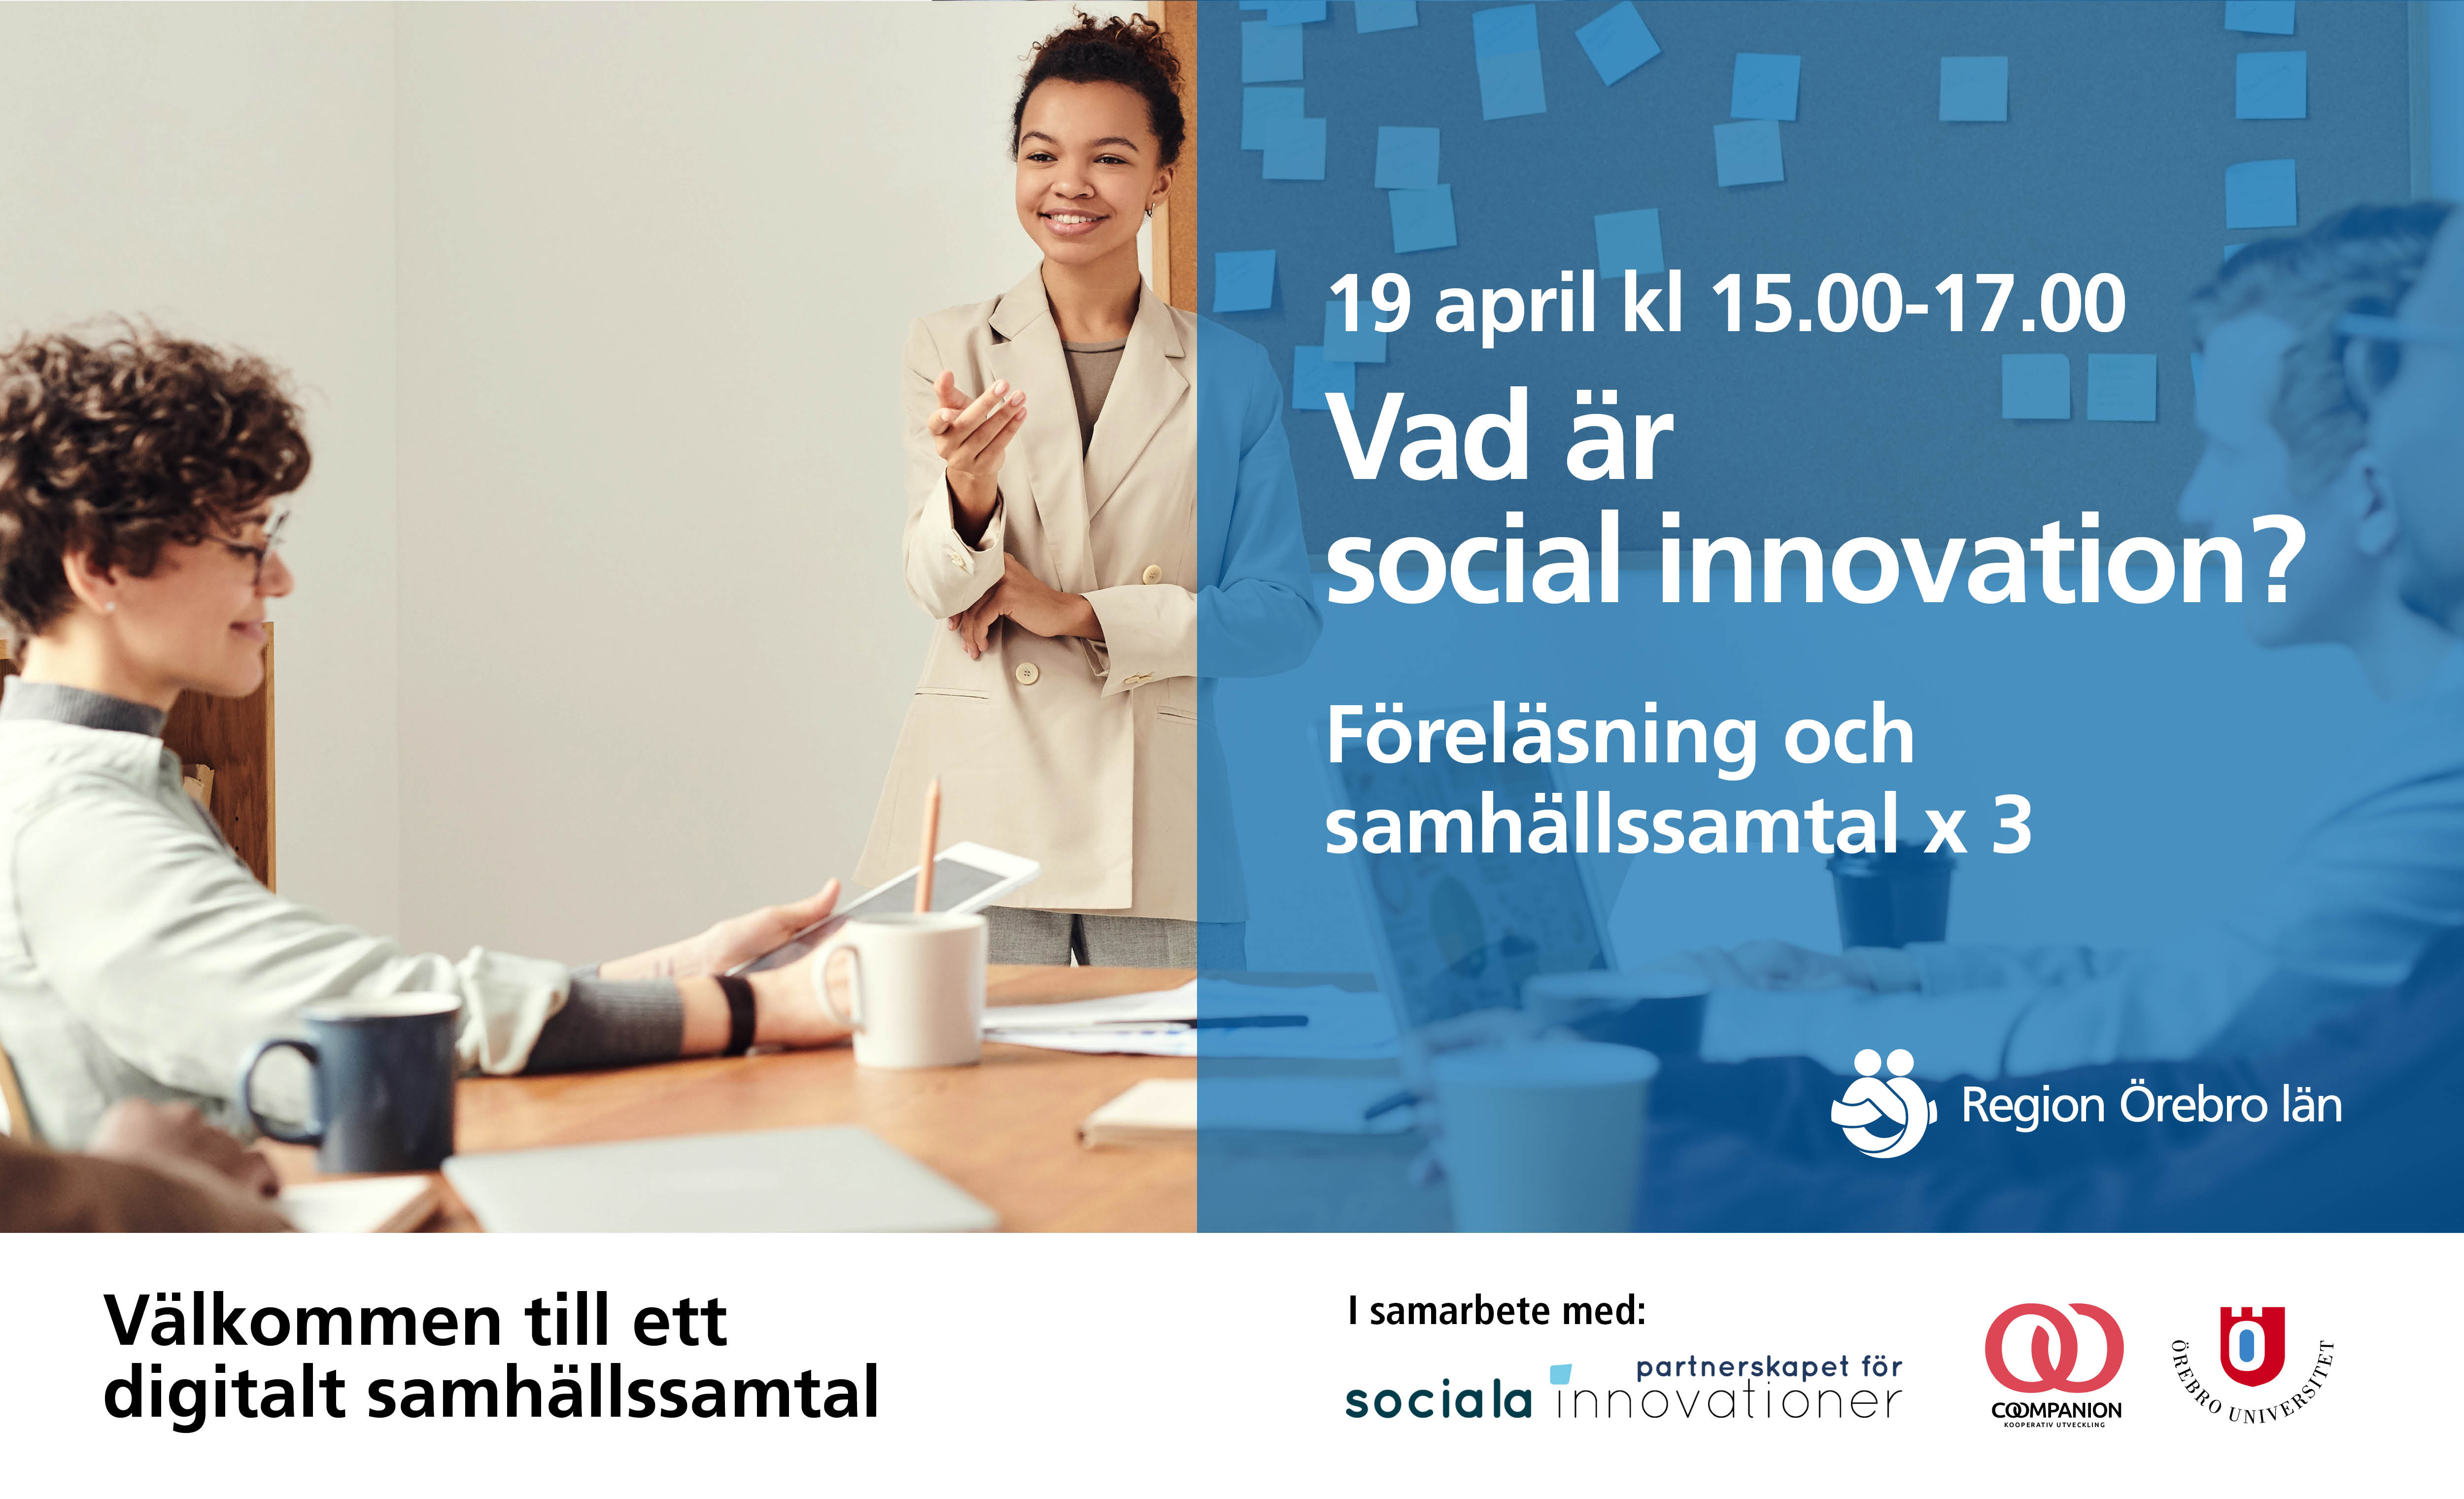 Vad är social innovation? Föreläsning och samhällssmtal x 3 19 april kl 15.00-17.00